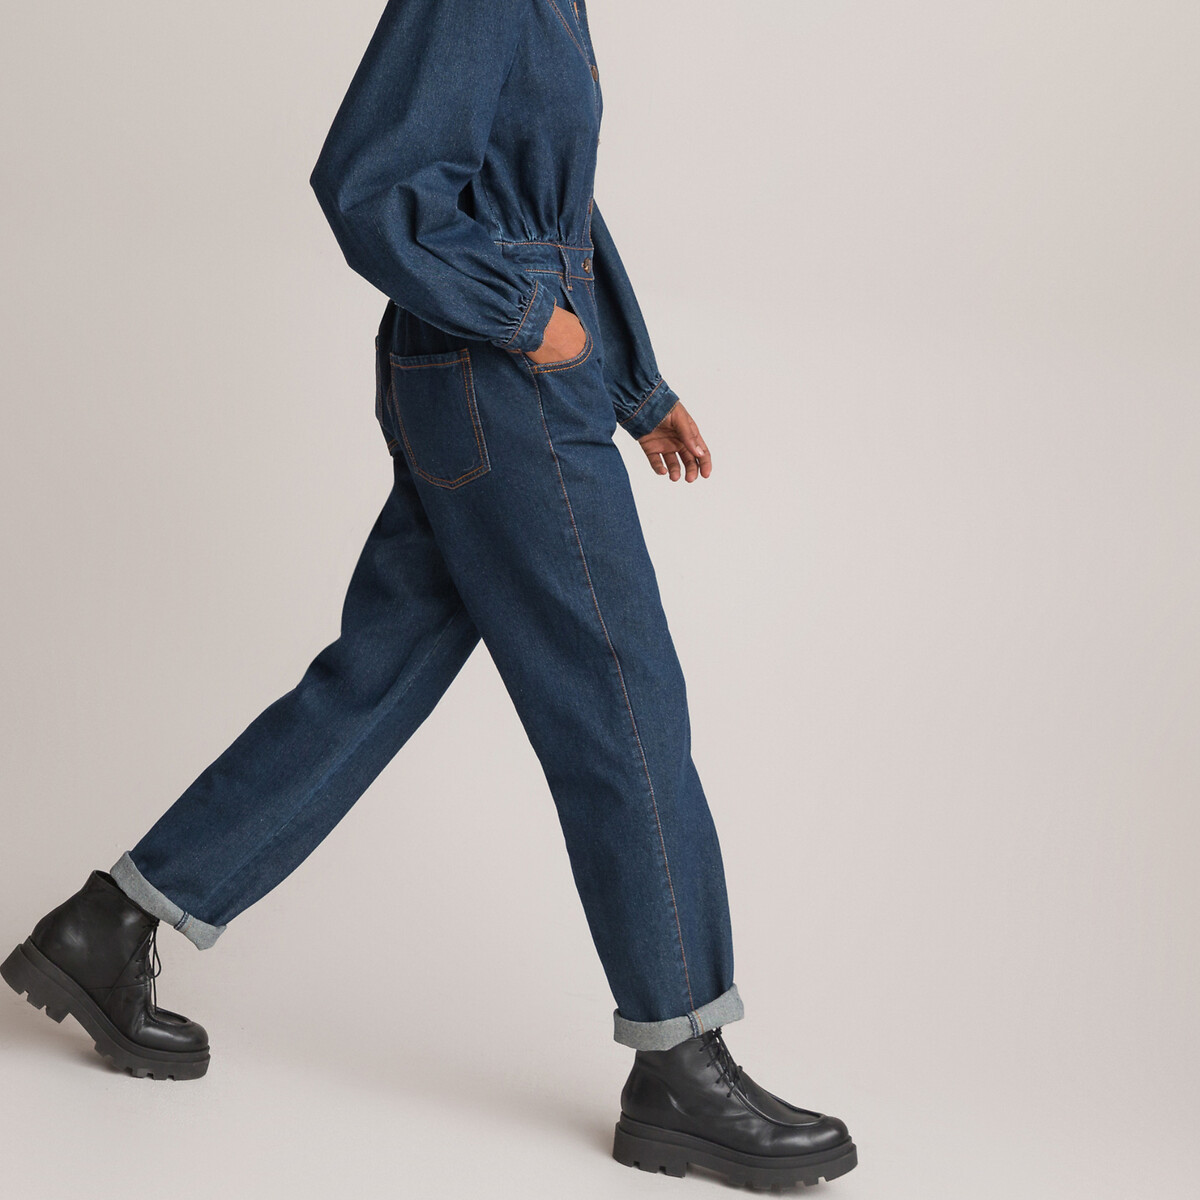 Комбинезон С брюками из джинсовой ткани 52 (FR) - 58 (RUS) синий LaRedoute, размер 52 (FR) - 58 (RUS) Комбинезон С брюками из джинсовой ткани 52 (FR) - 58 (RUS) синий - фото 3